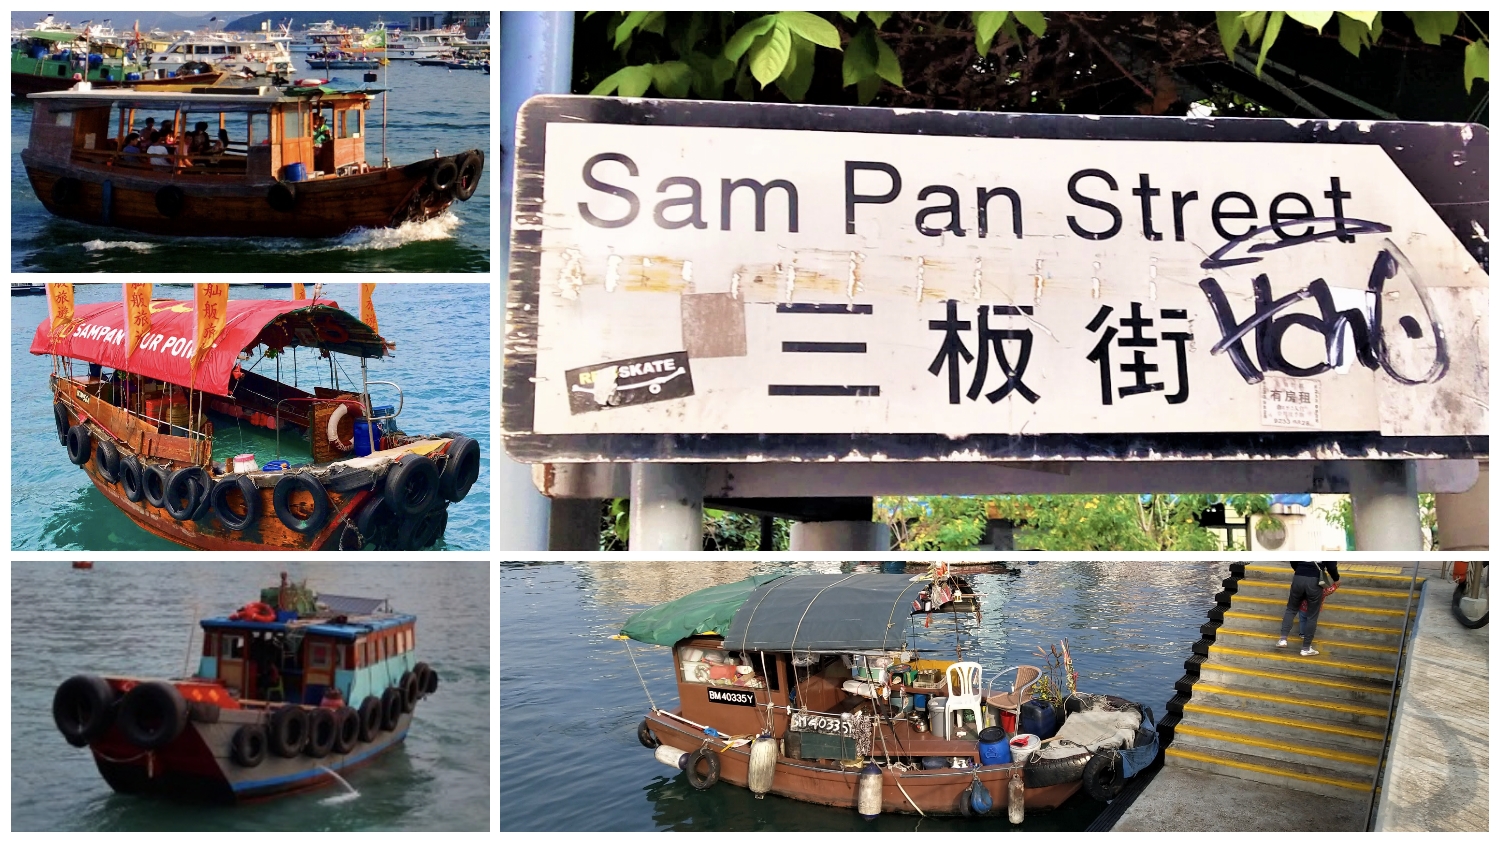 Can travelers take sampan boat ride at Sam Pan Street